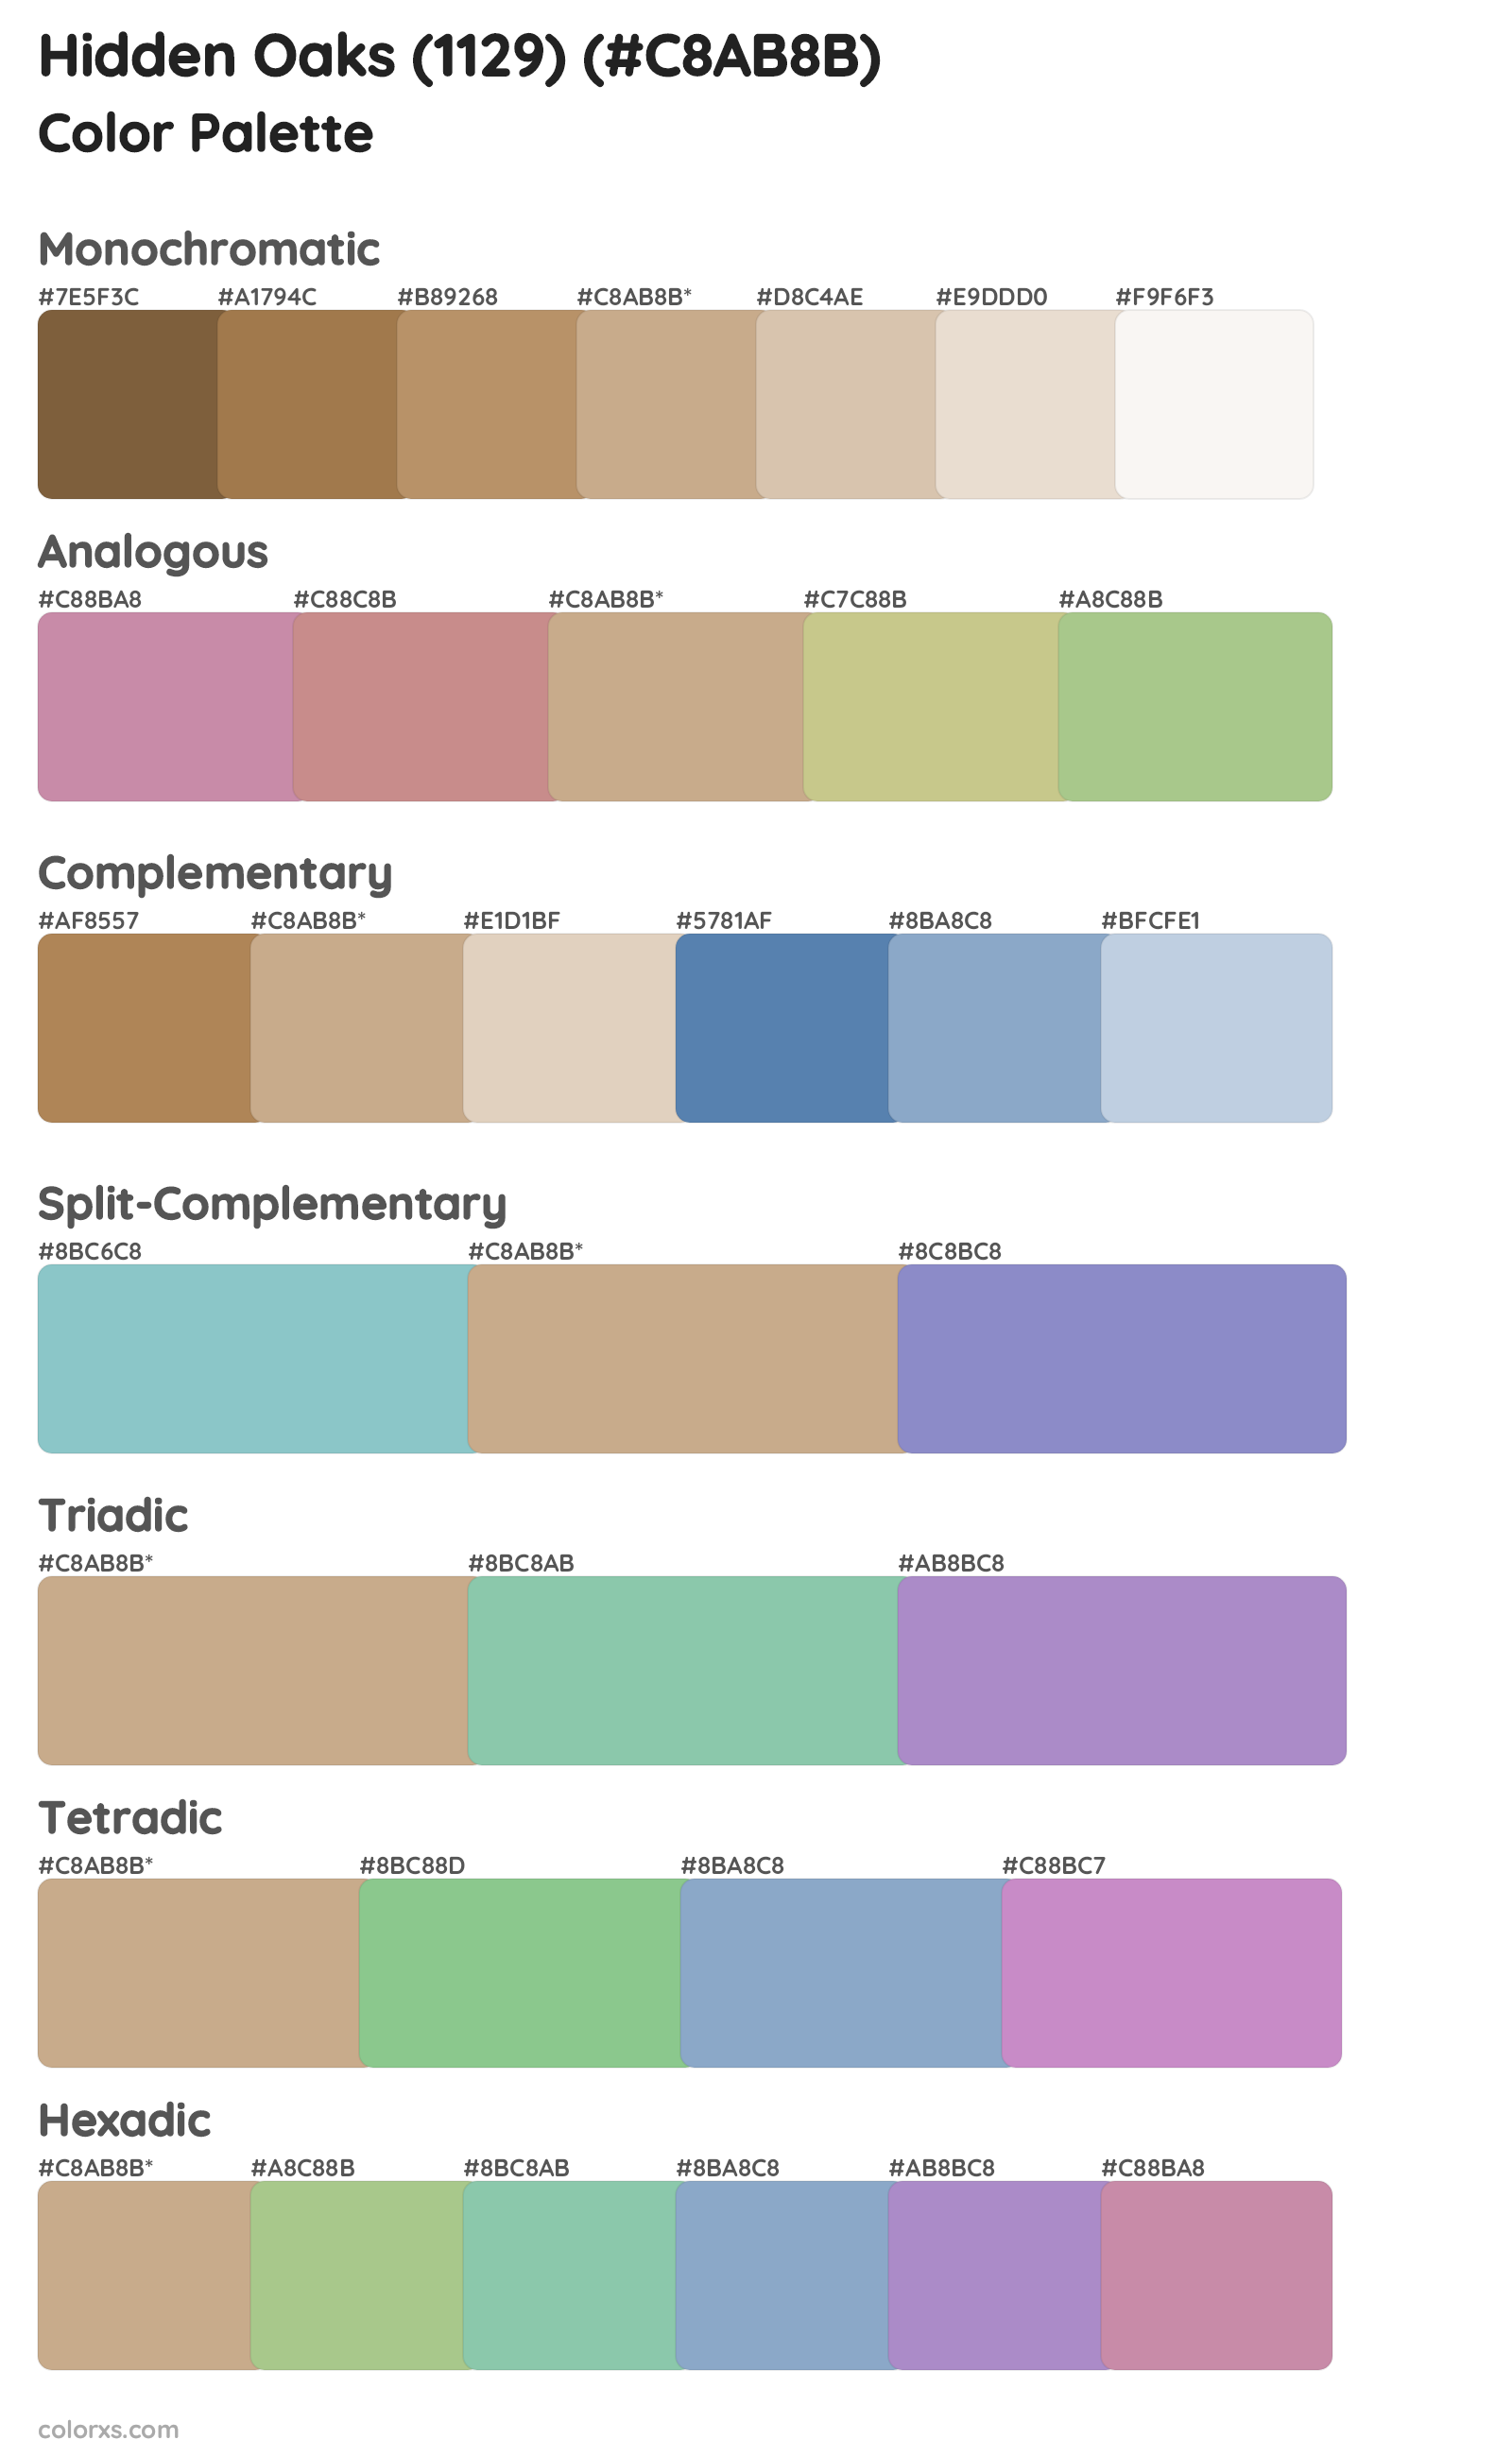 Hidden Oaks (1129) Color Scheme Palettes